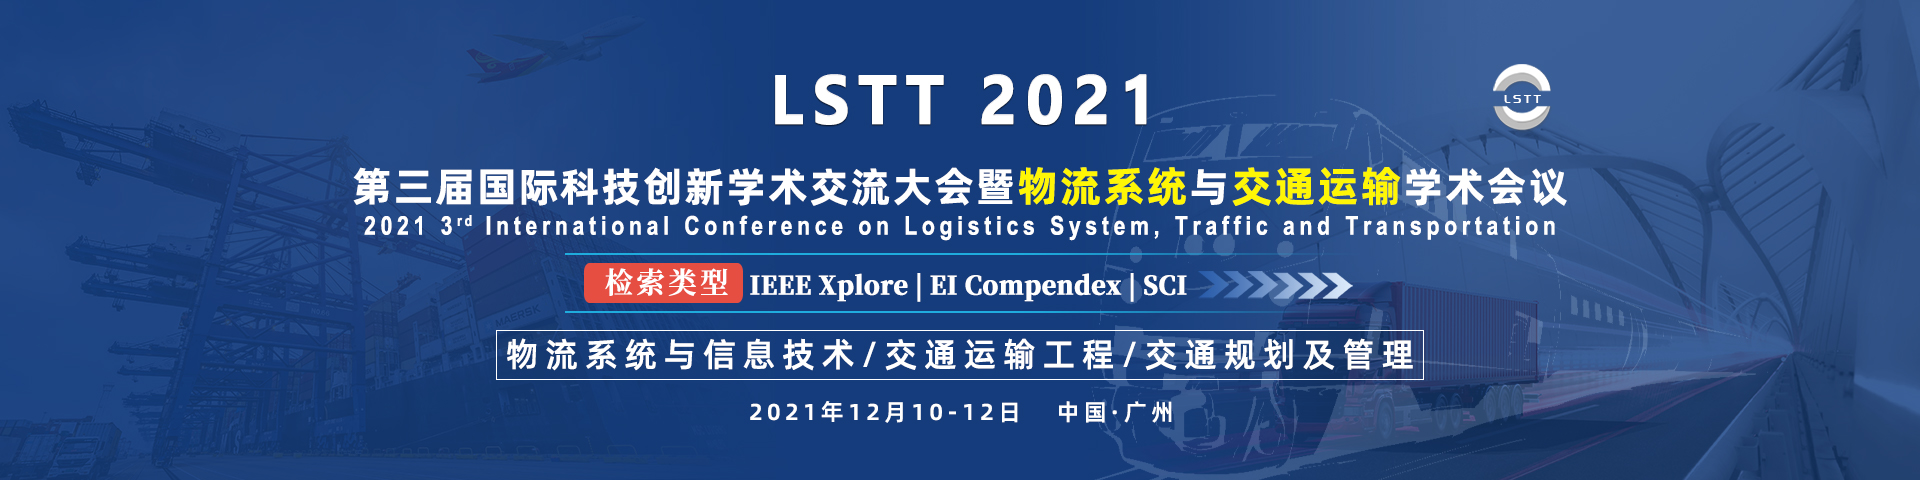 12月广州LSTT 2021 -banner-何霞丽-20210312.jpg